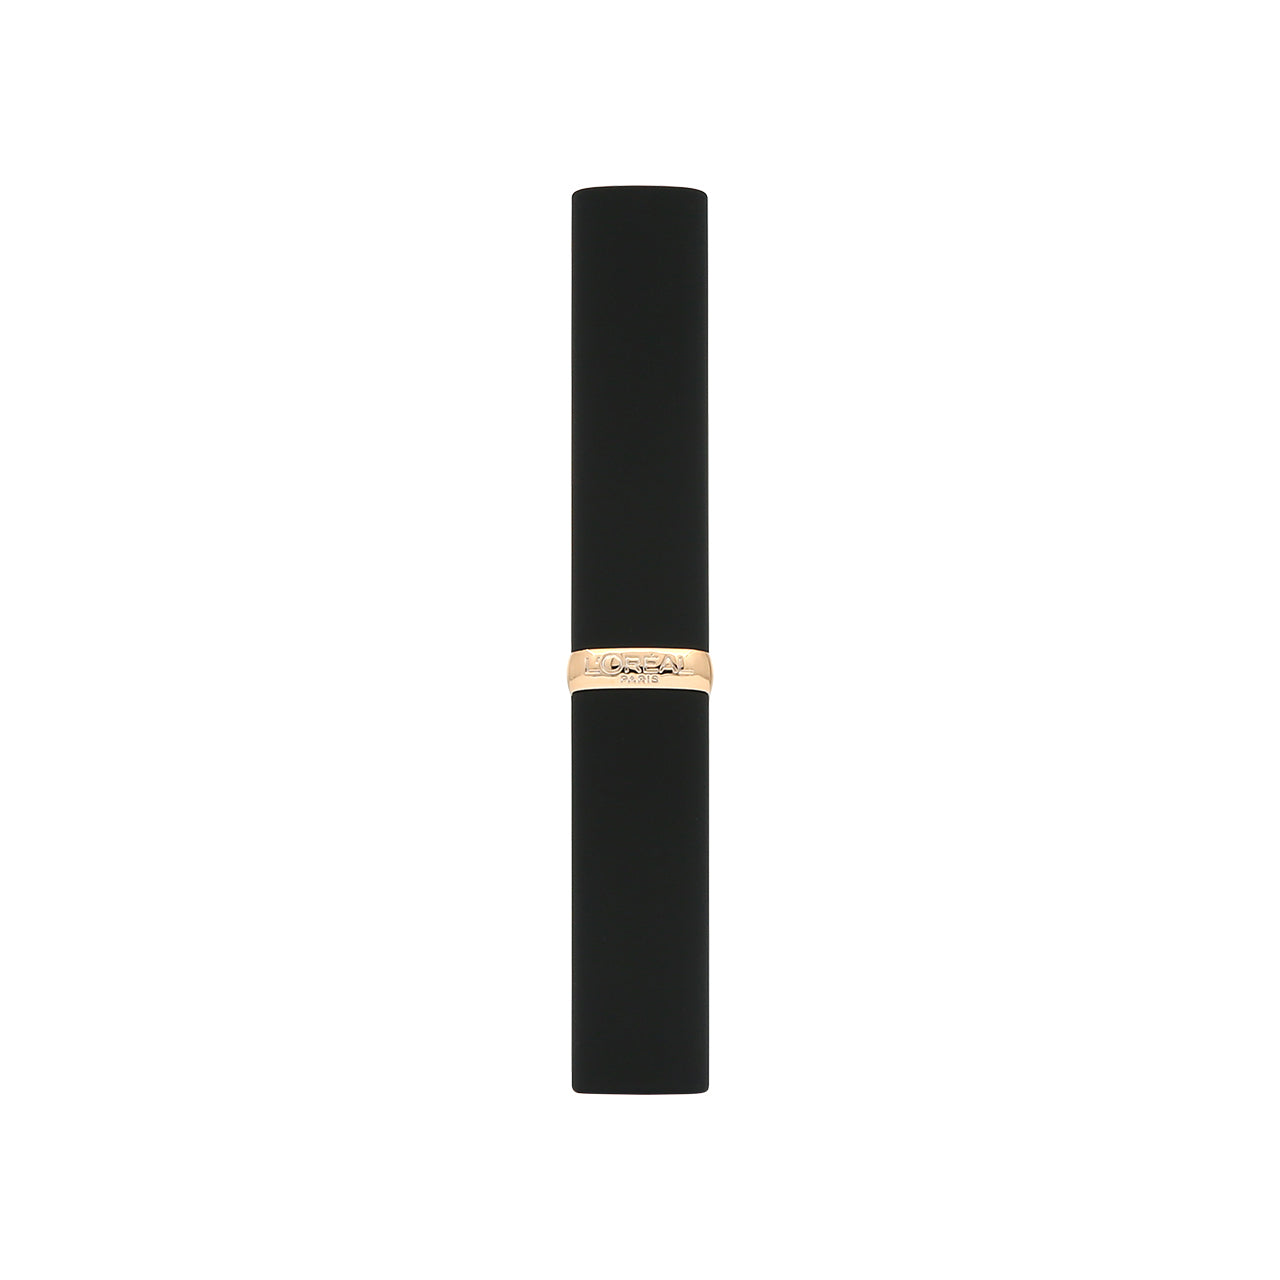 L'Oreal Paris Color Riche Intense Volume Matte #339 Le Wood Brulant 1.8g | Sasa Global eShop